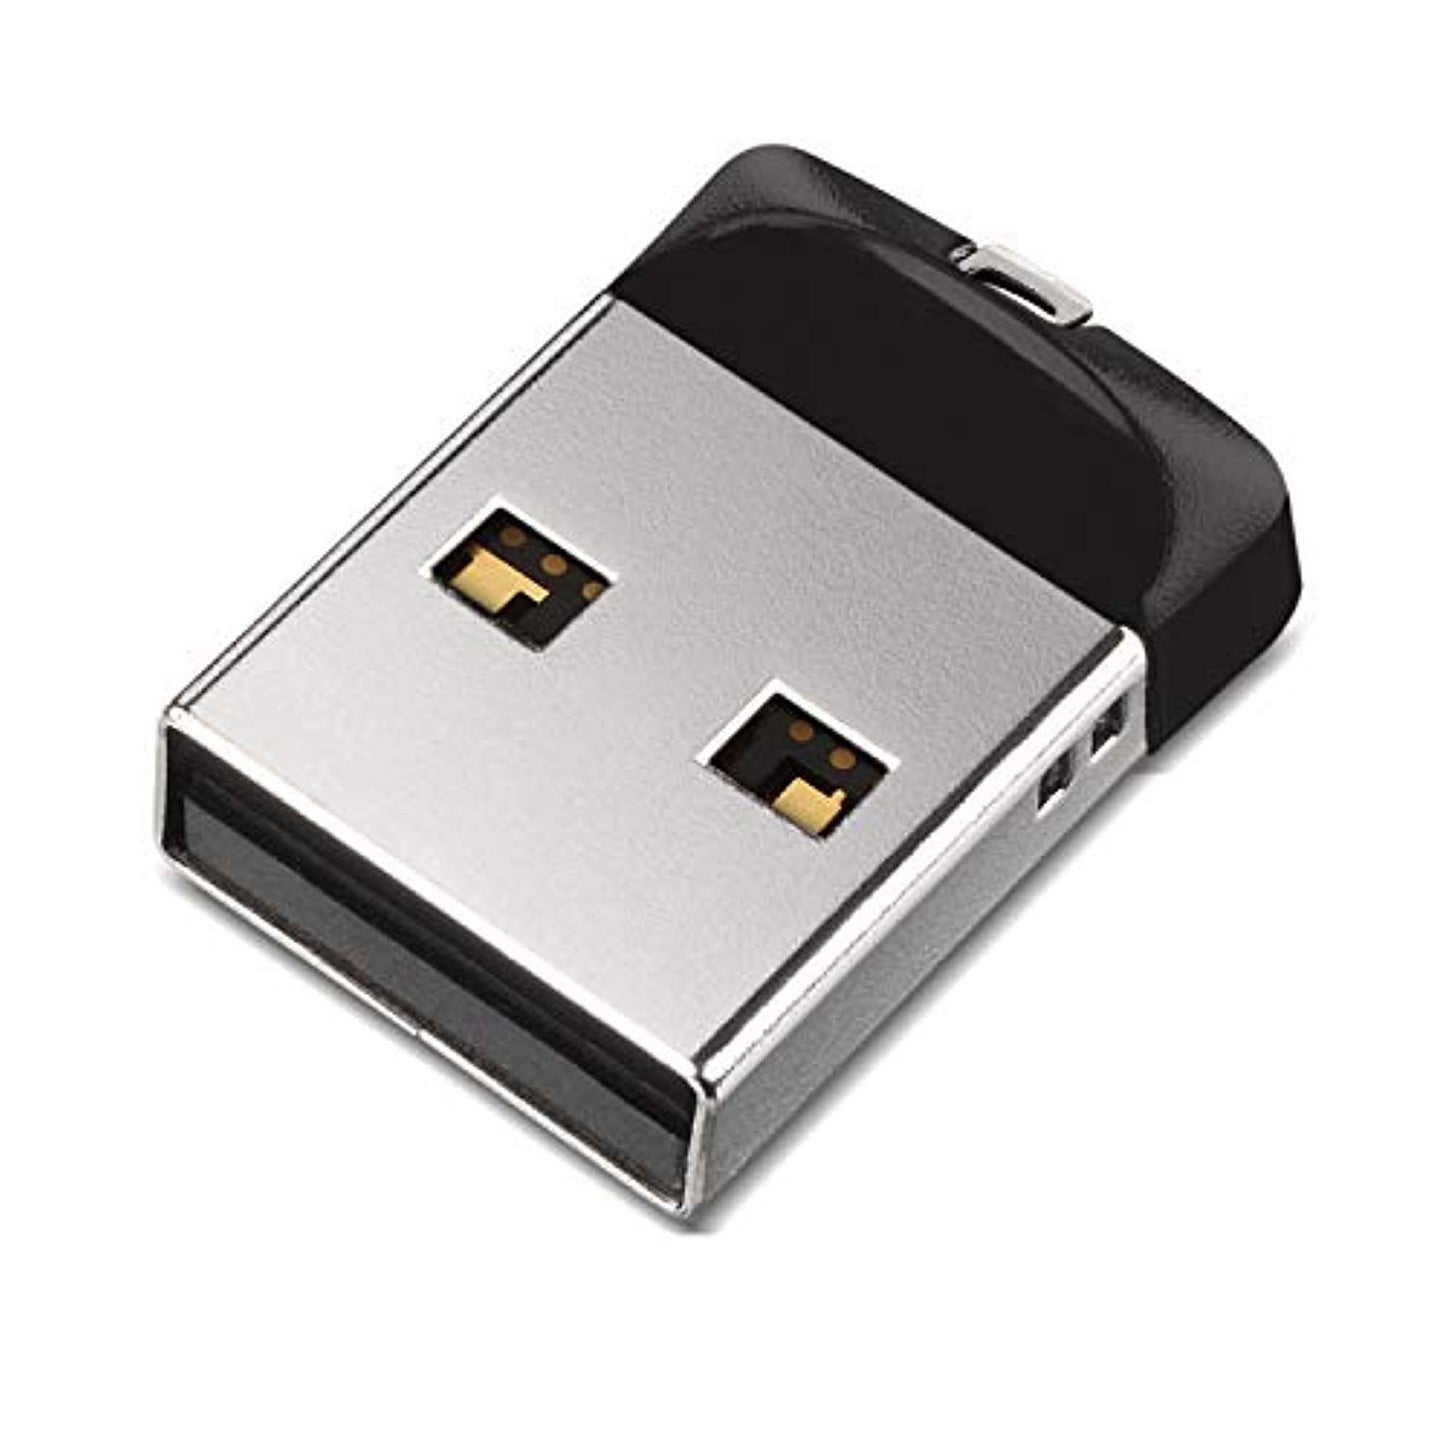 SanDisk Cruzer Fit USB 2.0 Flash Drive - Offer Games